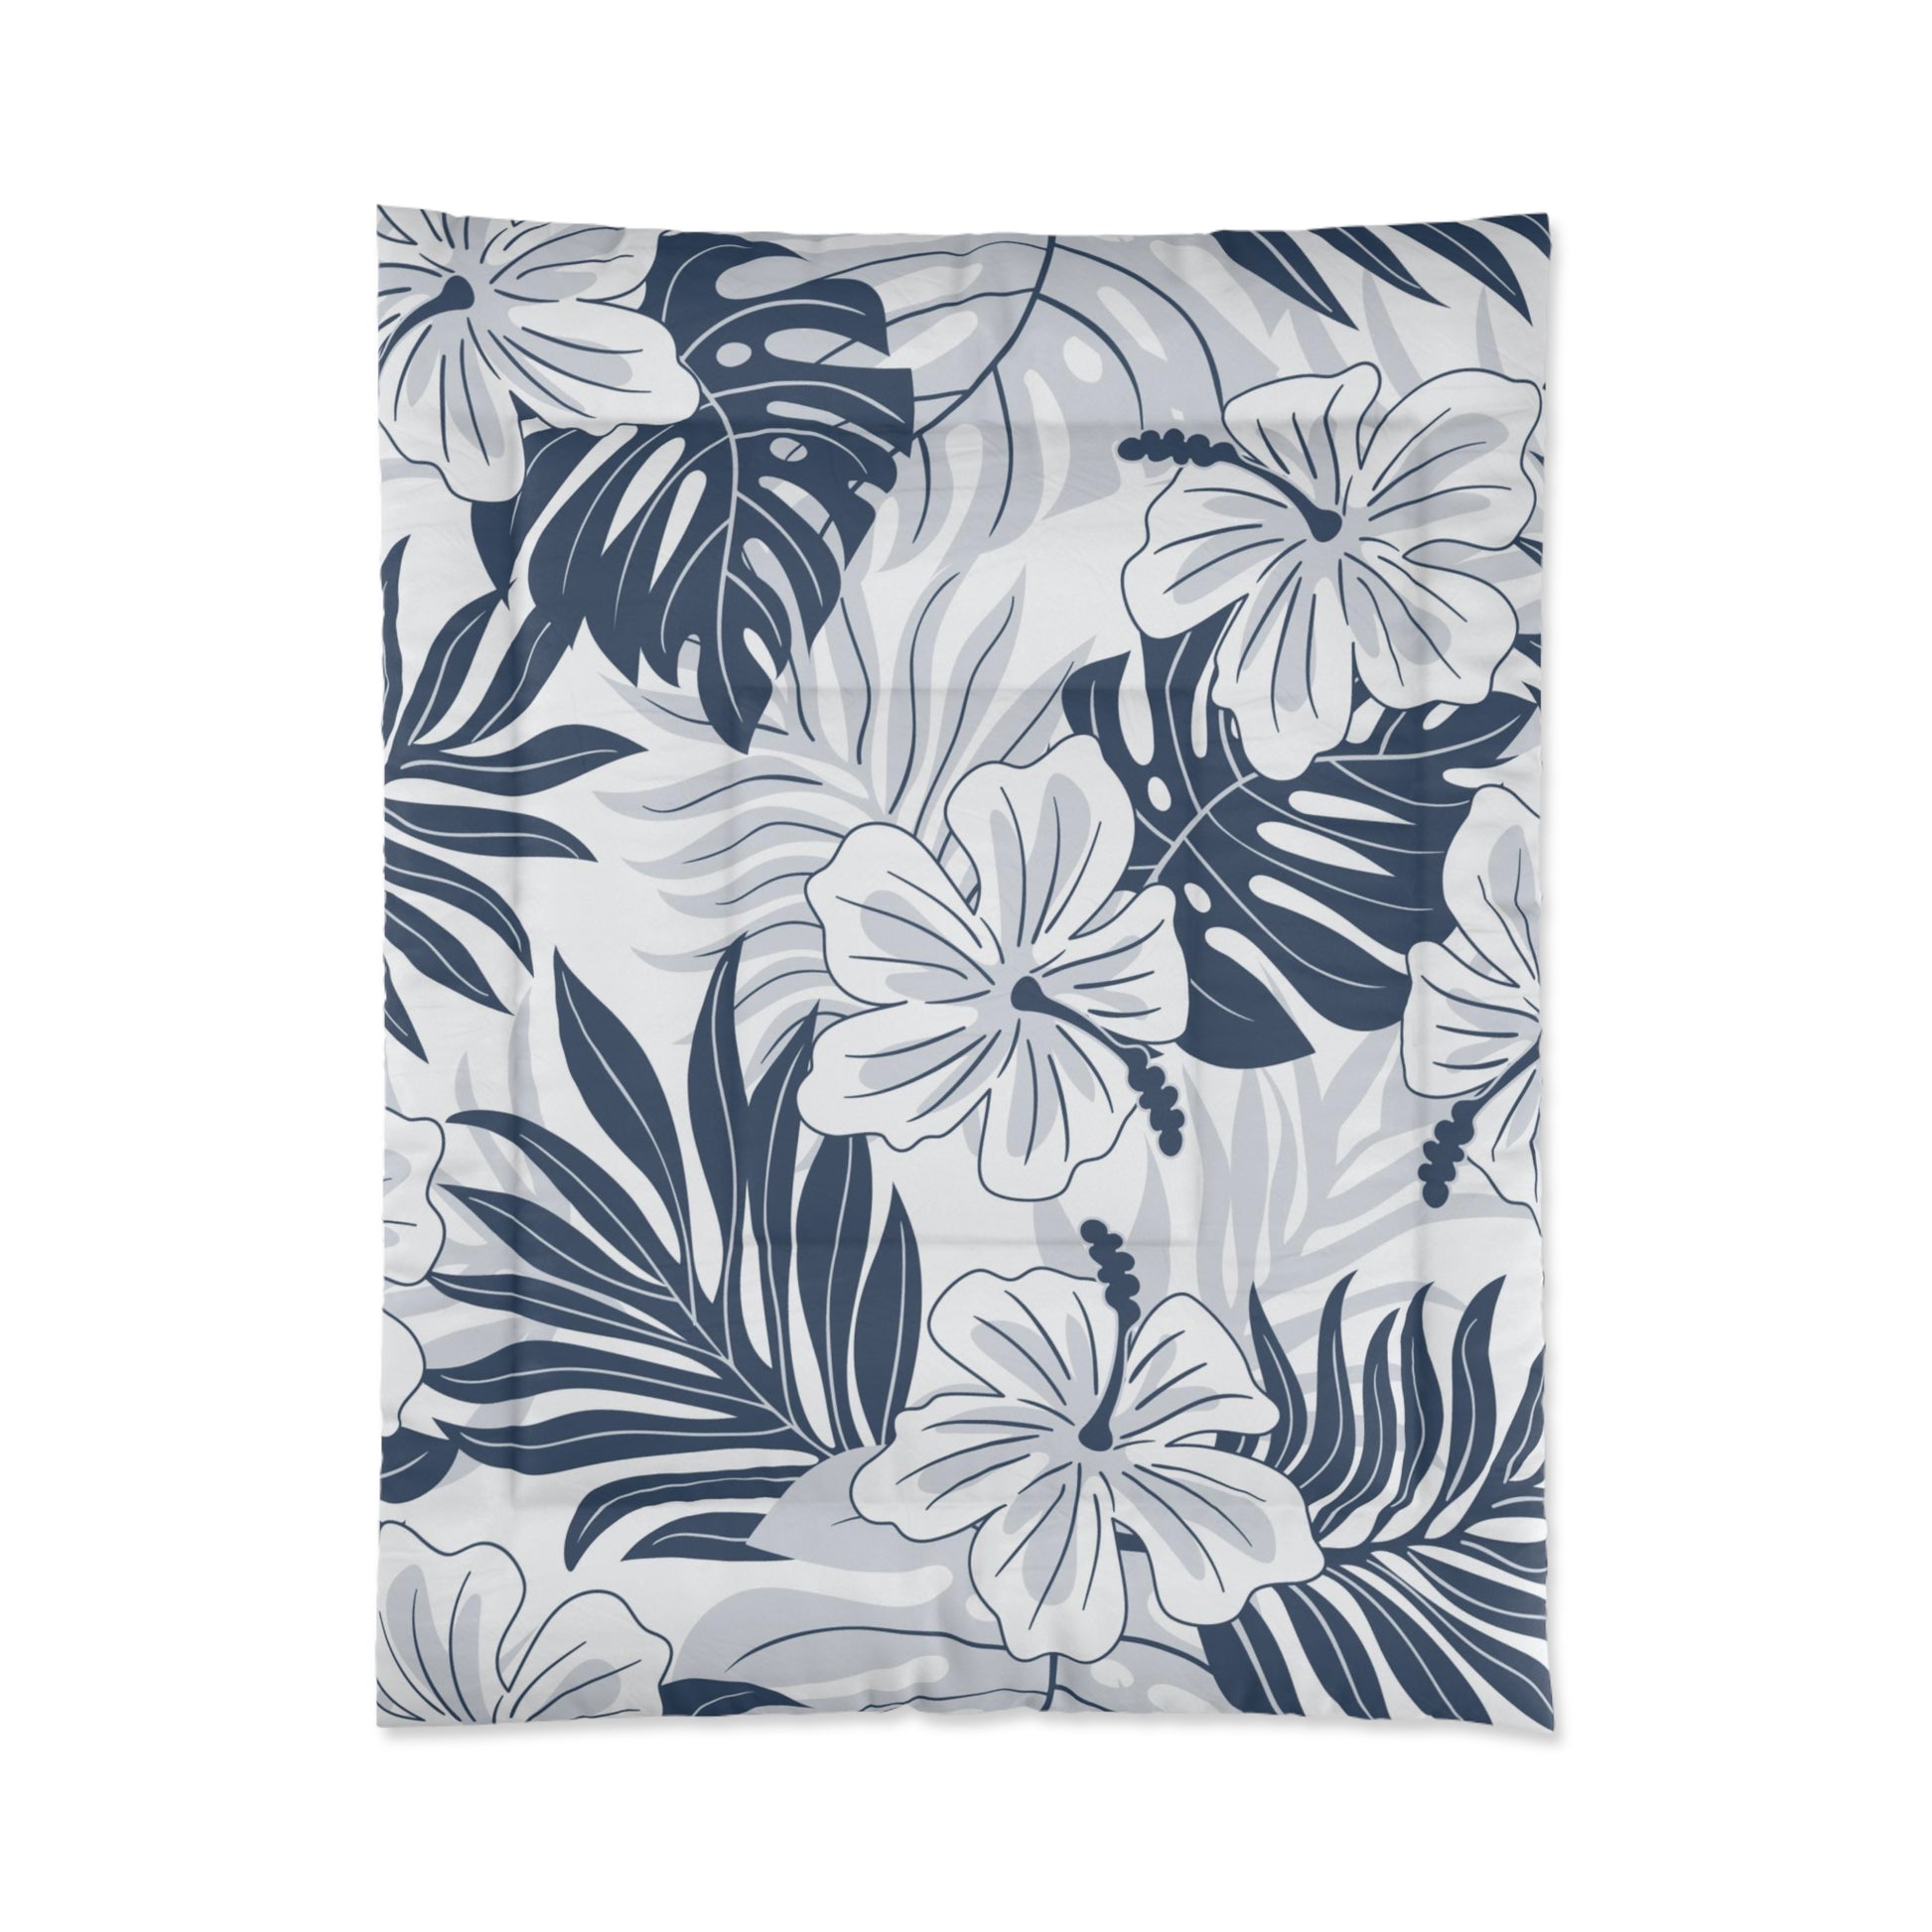 Aloha Hand Drawn Tropical Hawaiian Print Comforter